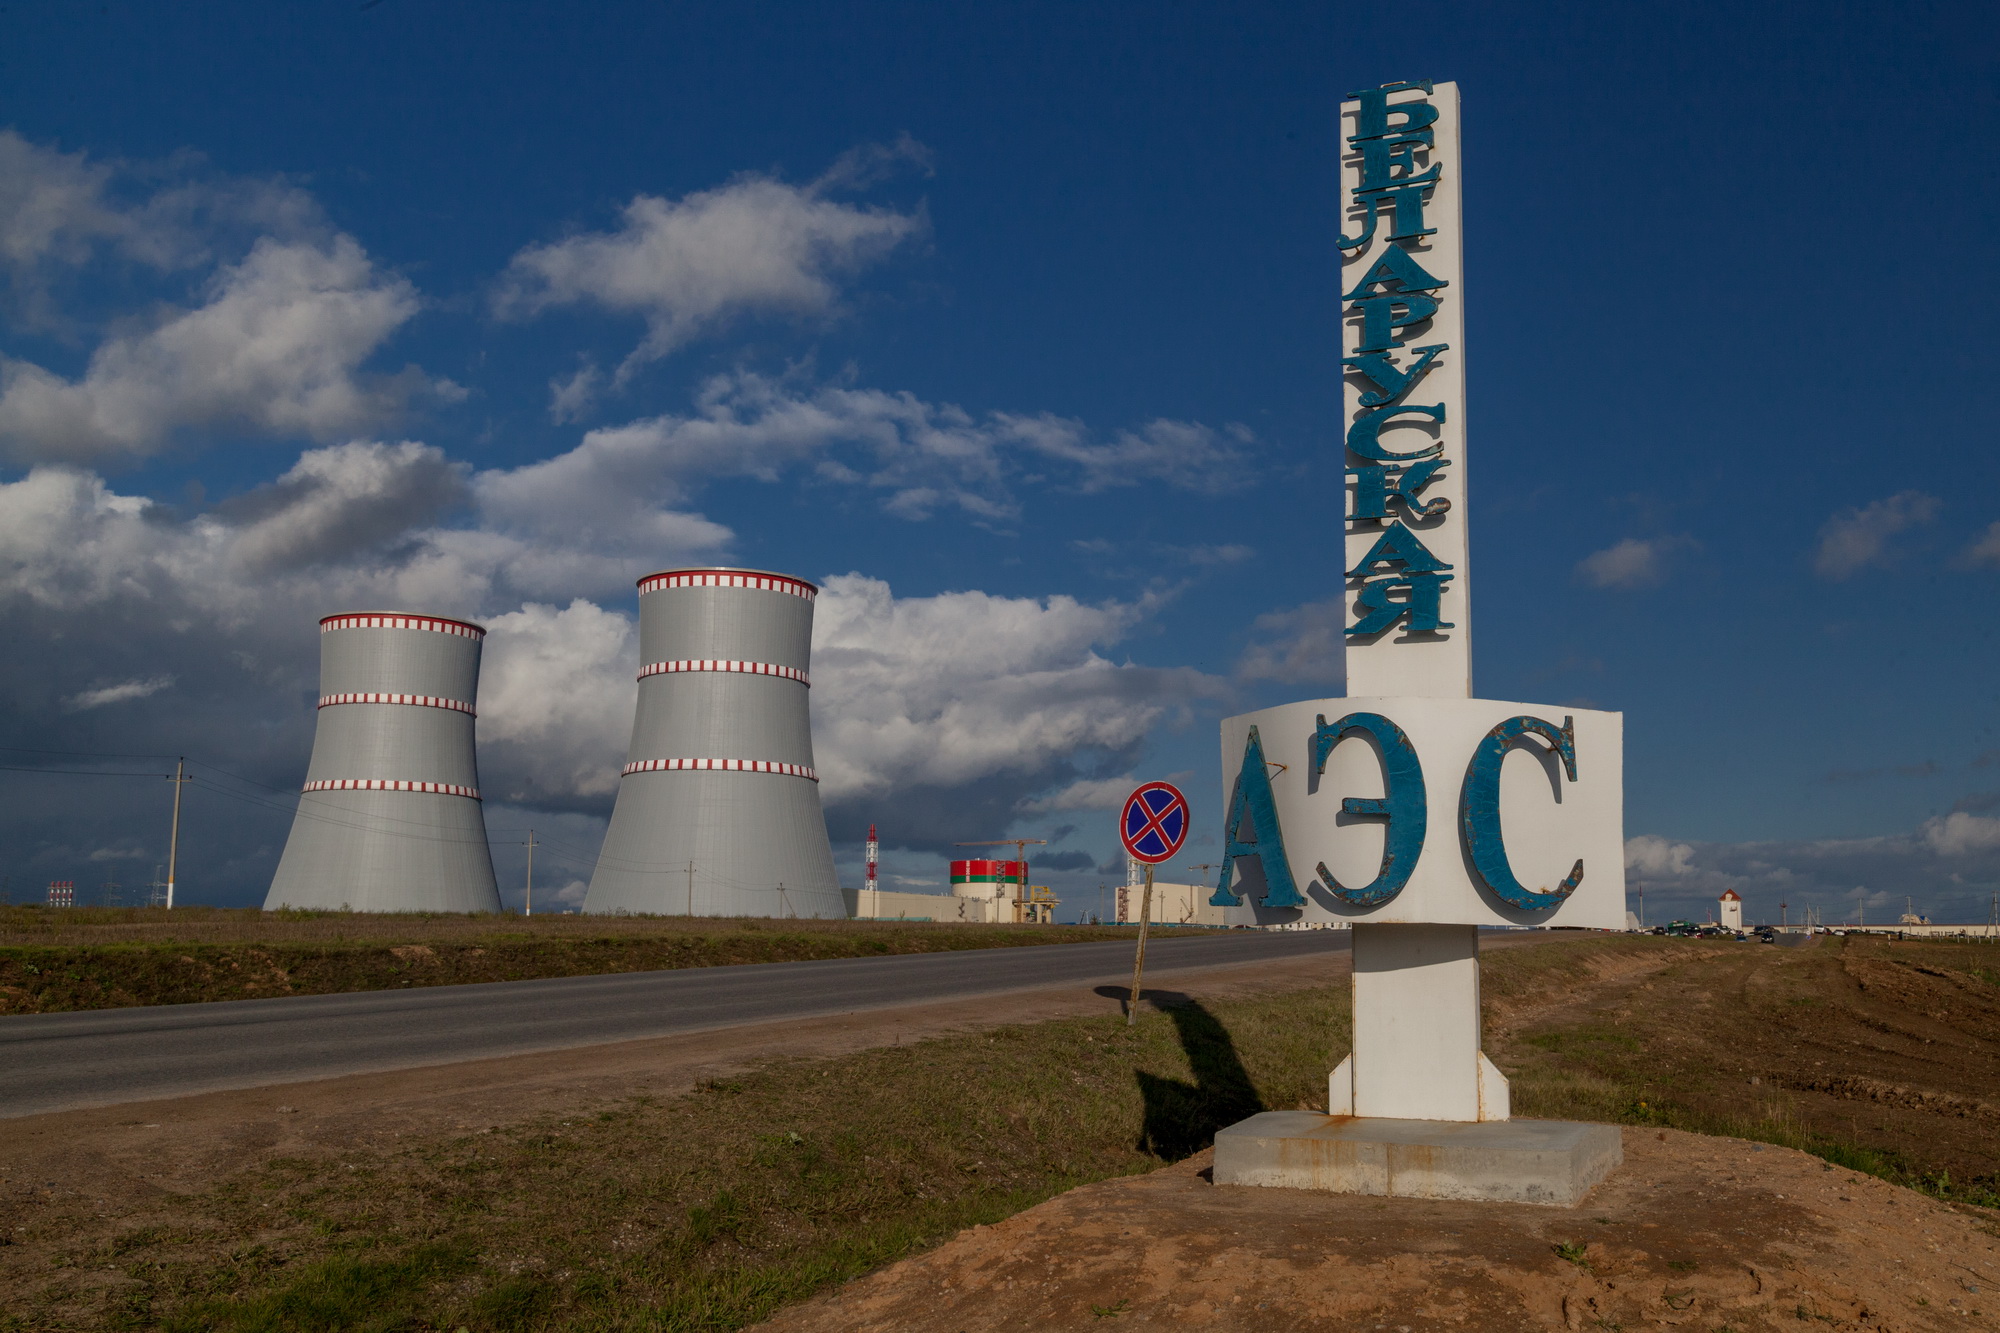 Загрузка ядерного топлива на первом блоке БелАЭС планируется в июле – Минэнерго Беларуси.